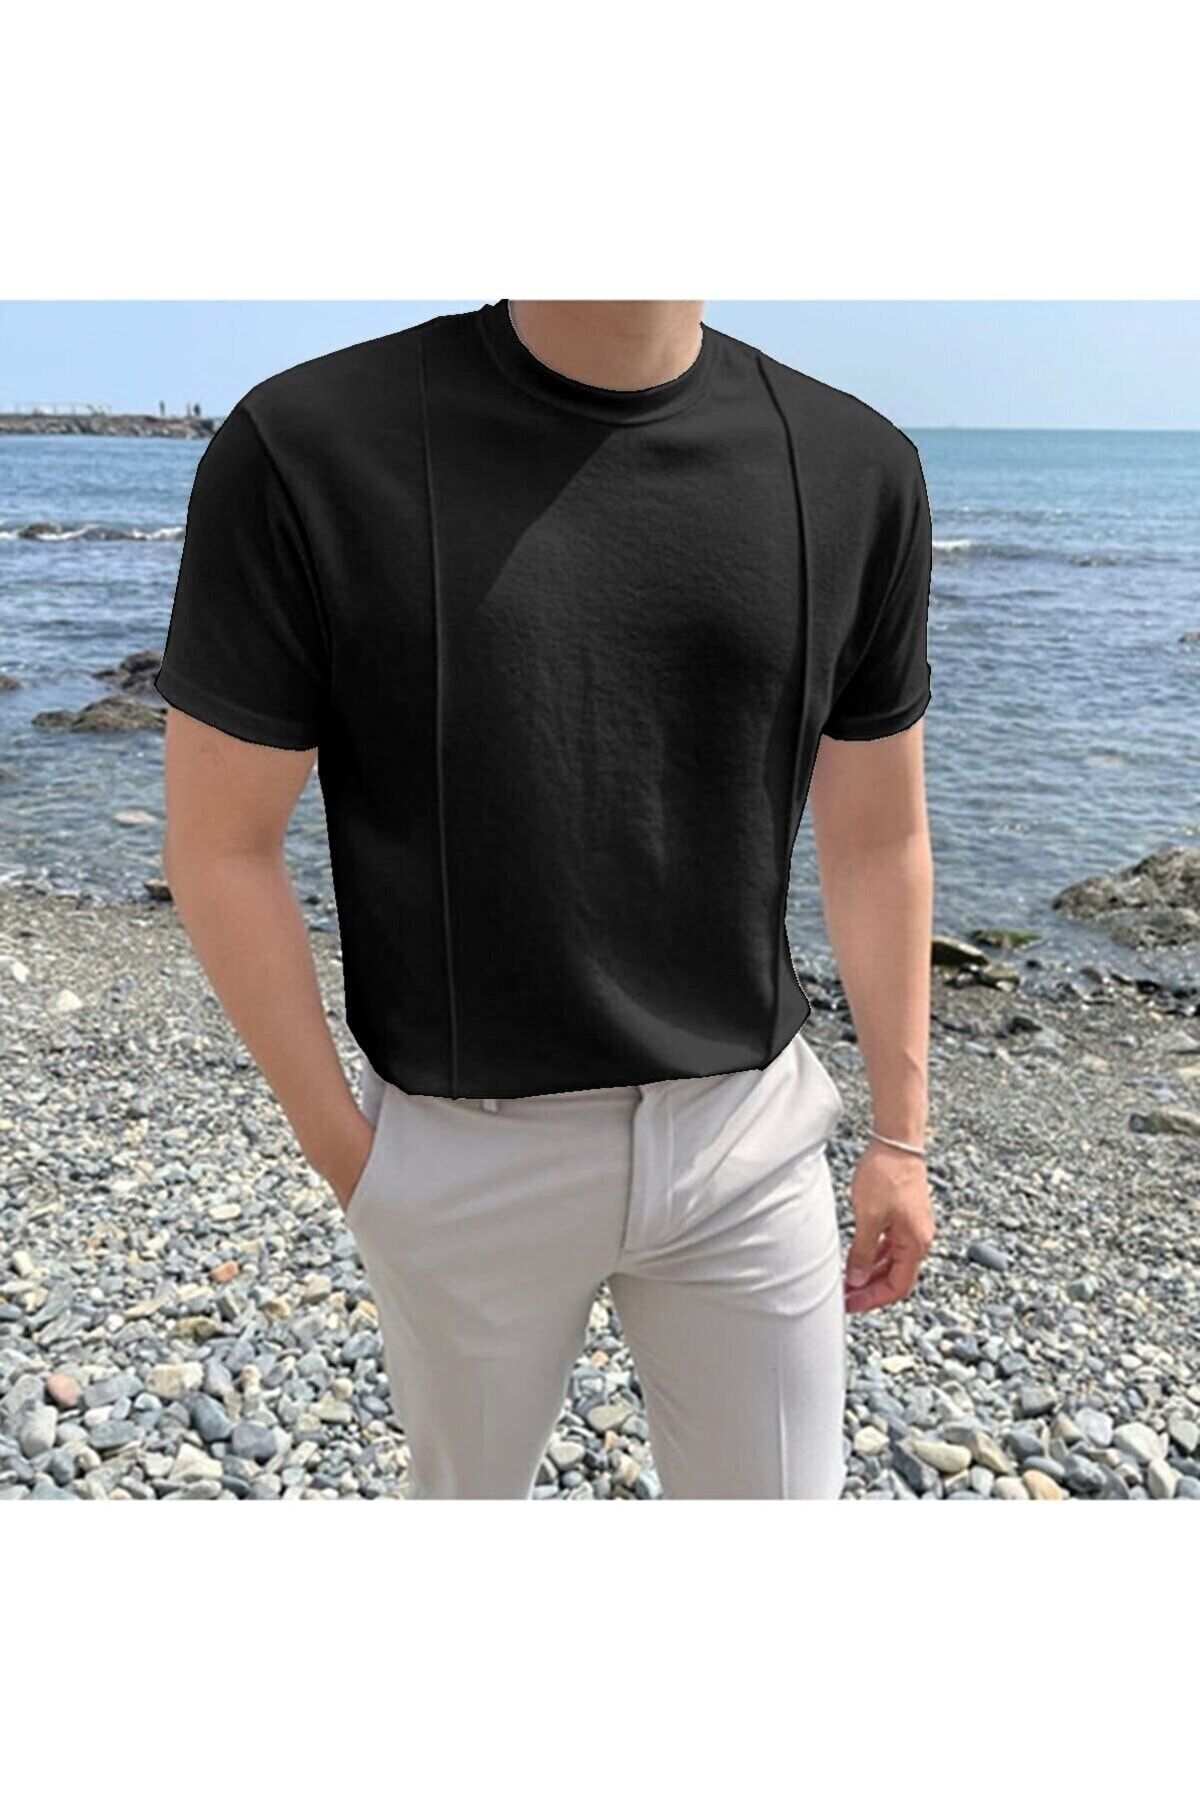 Tarz Cool Siyah Erkek Yuvarlak Yaka 2 Çizgili Örme Triko T-shirt